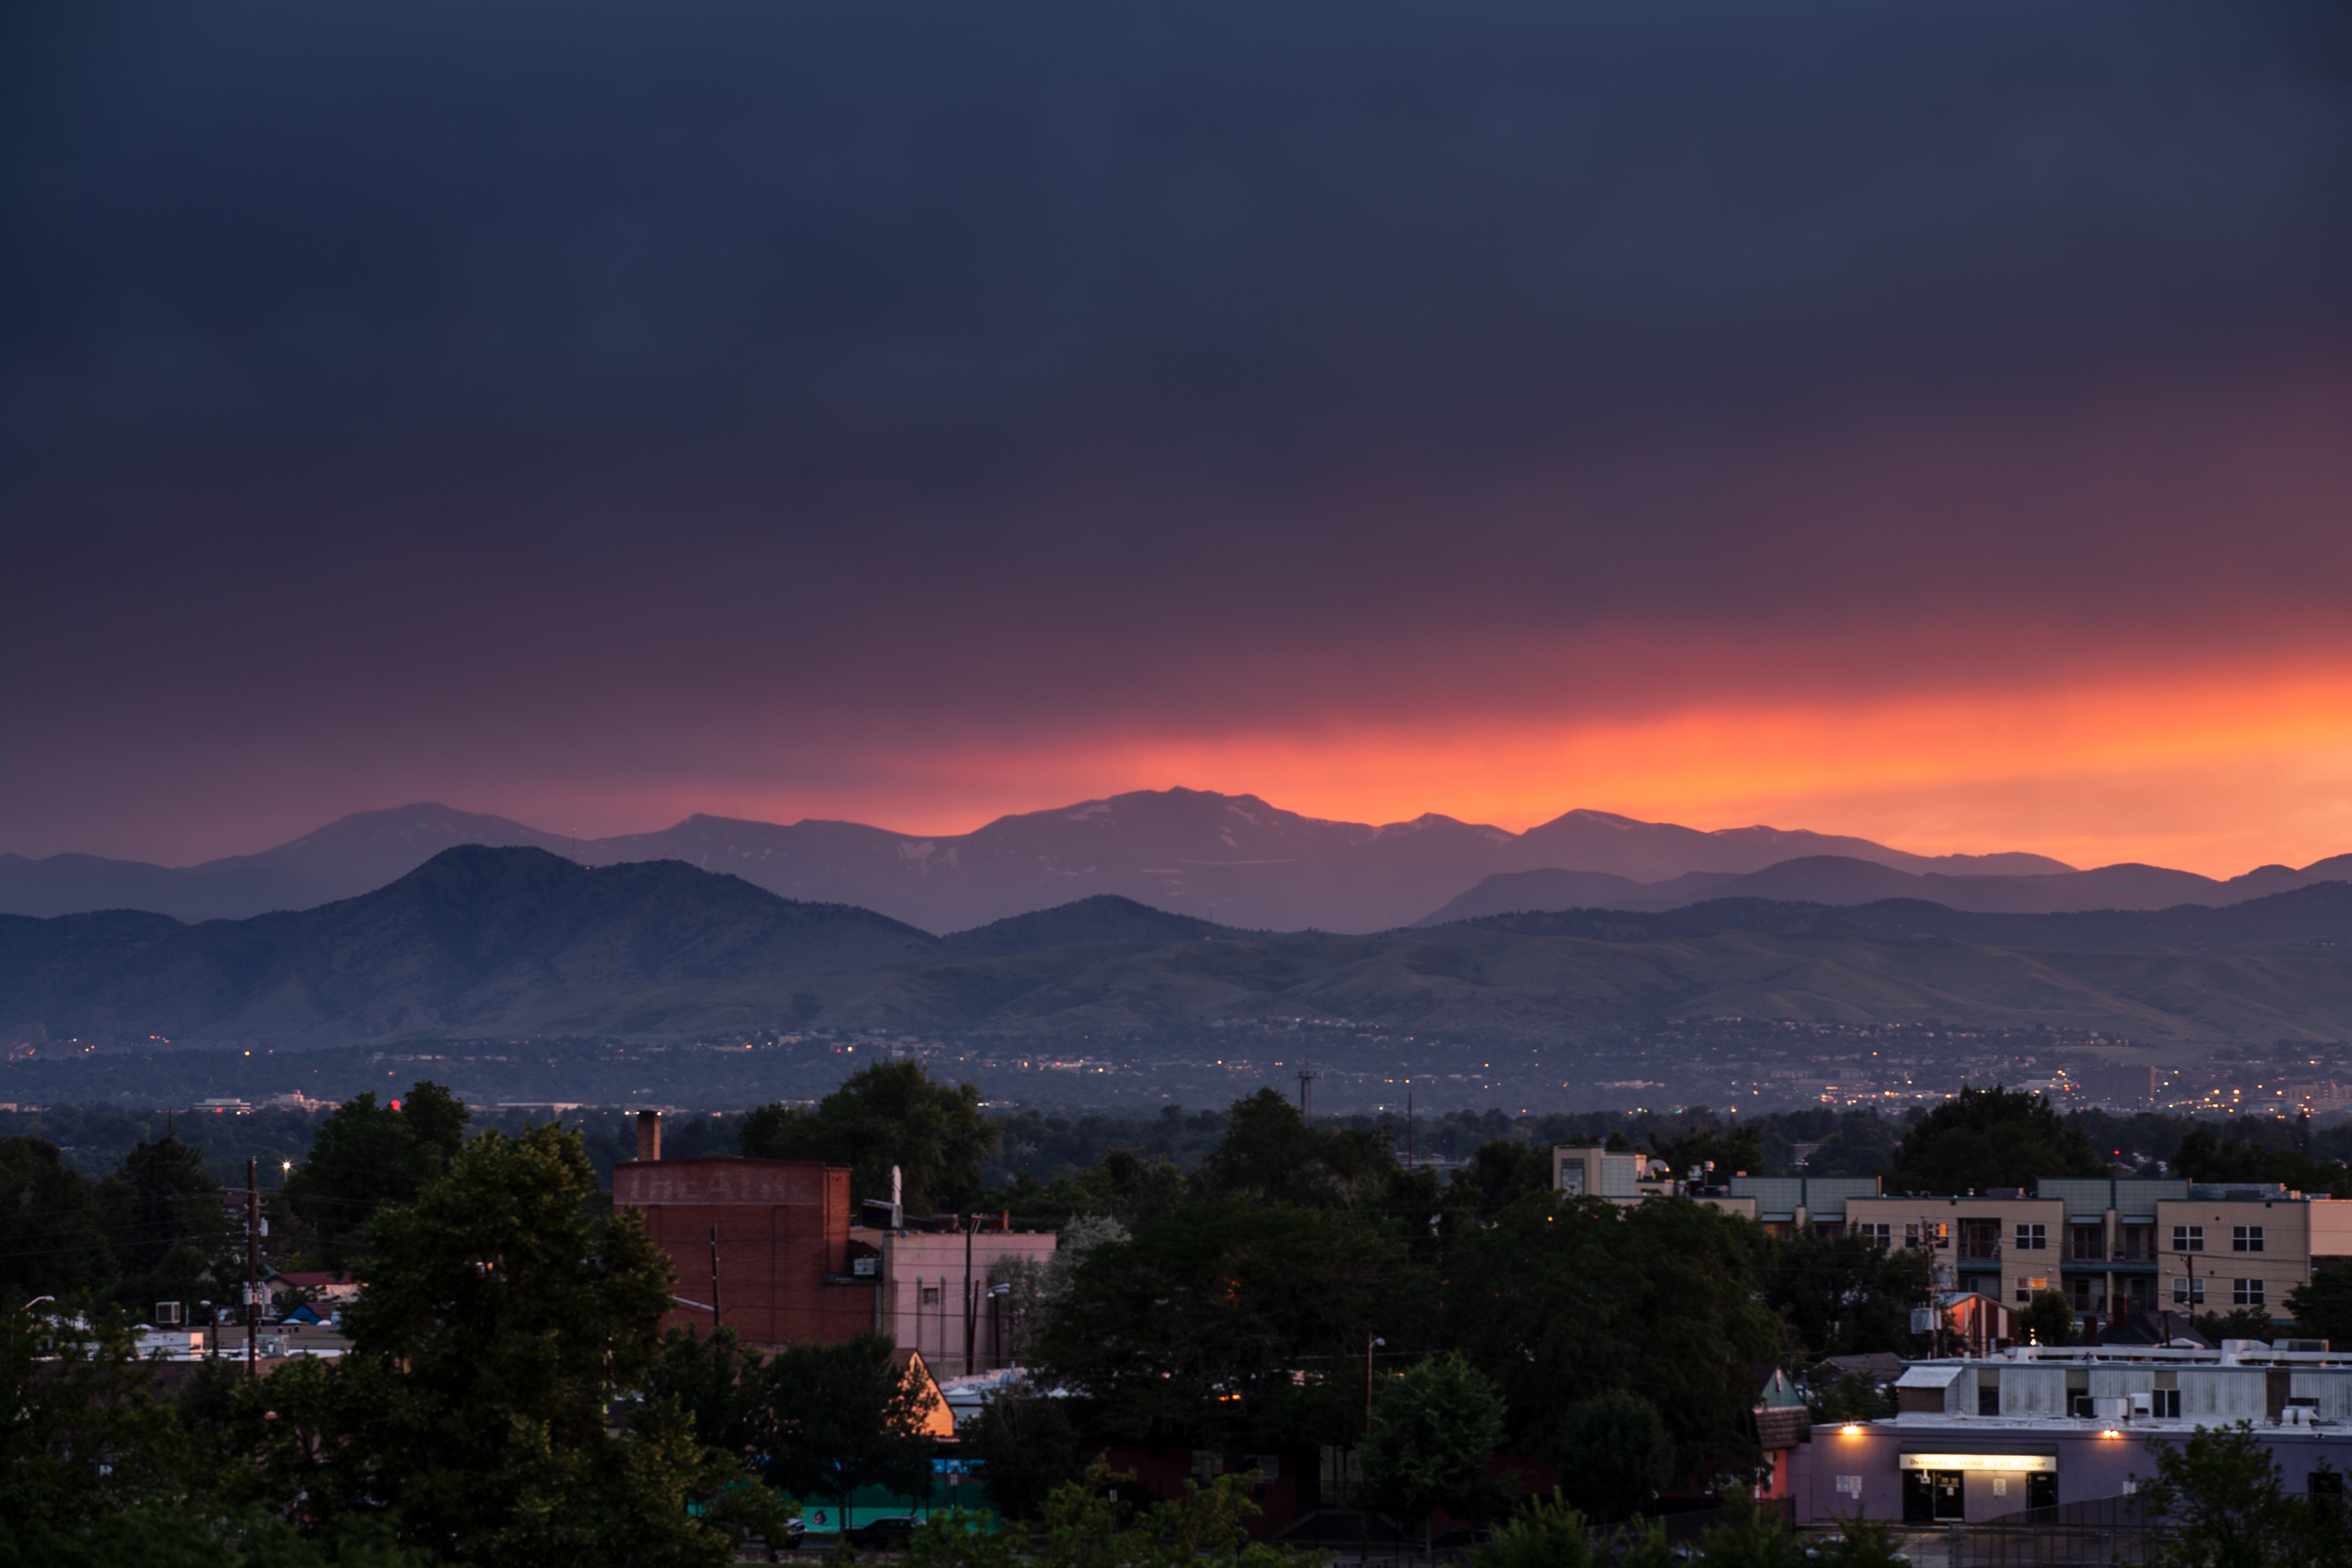 Mount Evans sunset - July 14, 2011